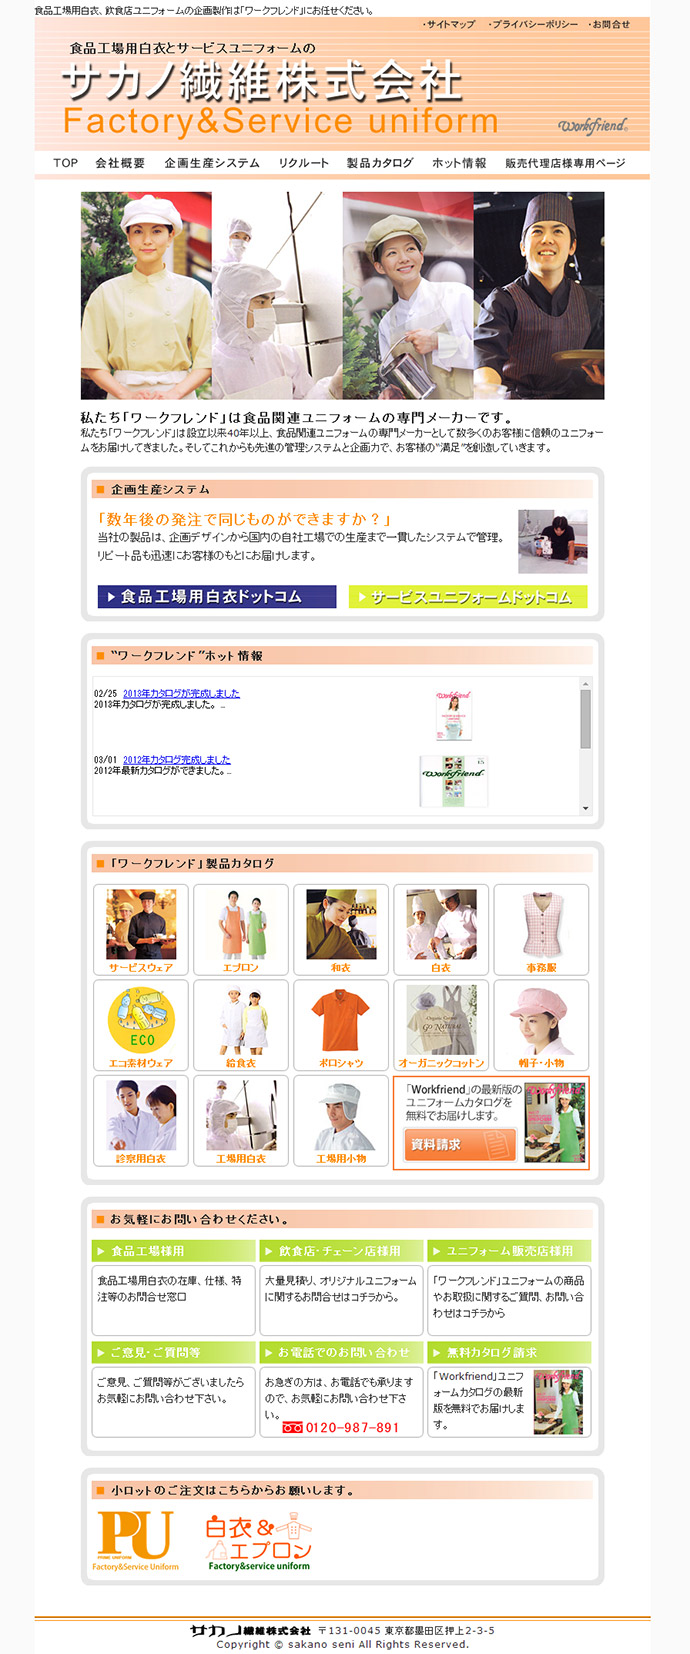 東京都 サカノ繊維株式会社。ユニフォームの一括見積りサイト｜ユニフォーム.com(ドットコム)